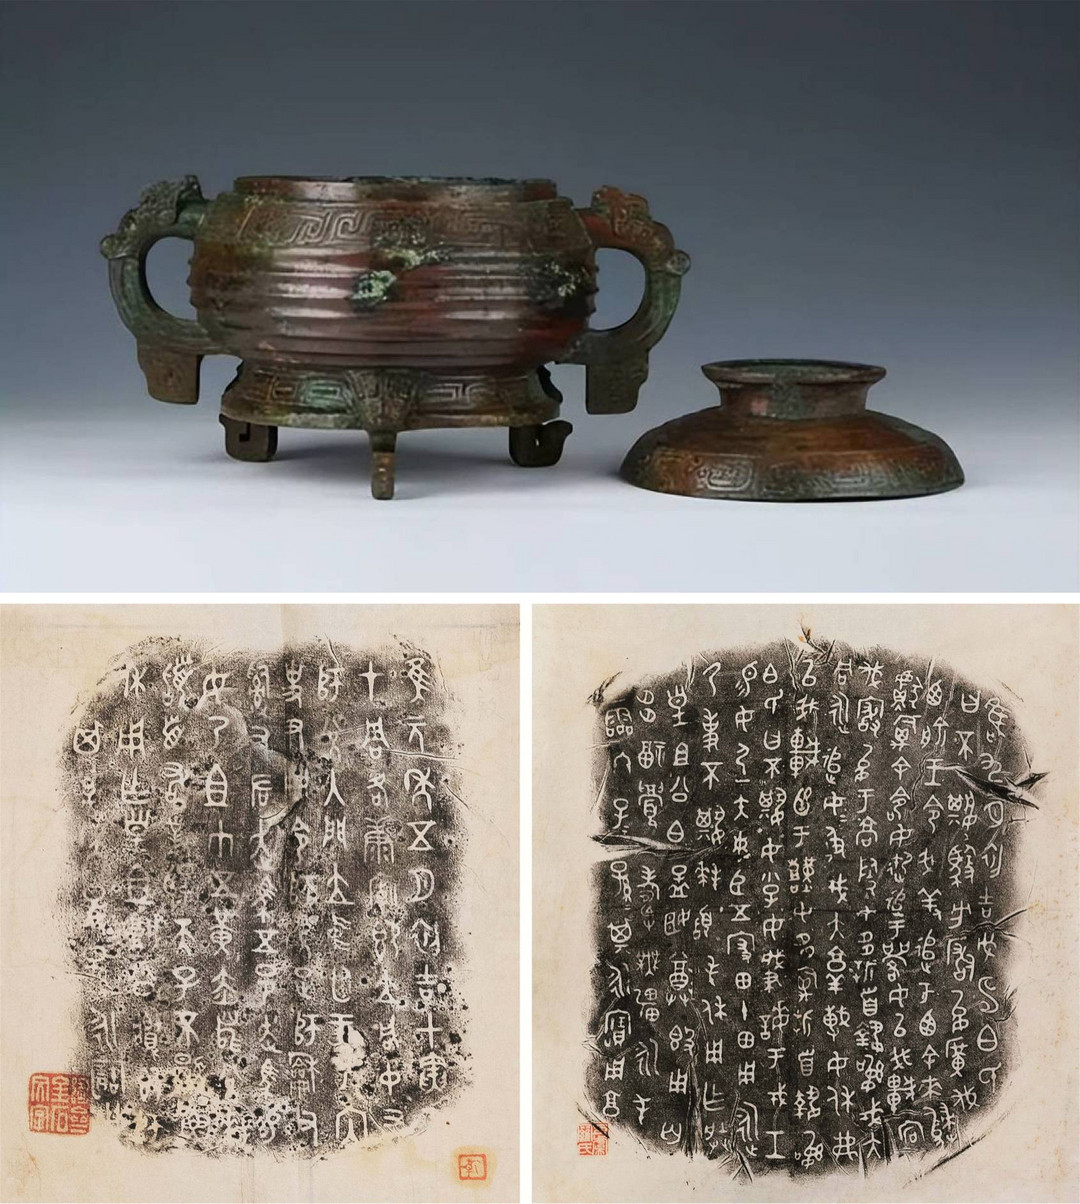 目前发现最早的秦国青铜器——不其簋（上图），这件文物的簋、盖分散于两地出土，成为文博界的一桩奇事。下图为器身铭文©滕州市博物馆